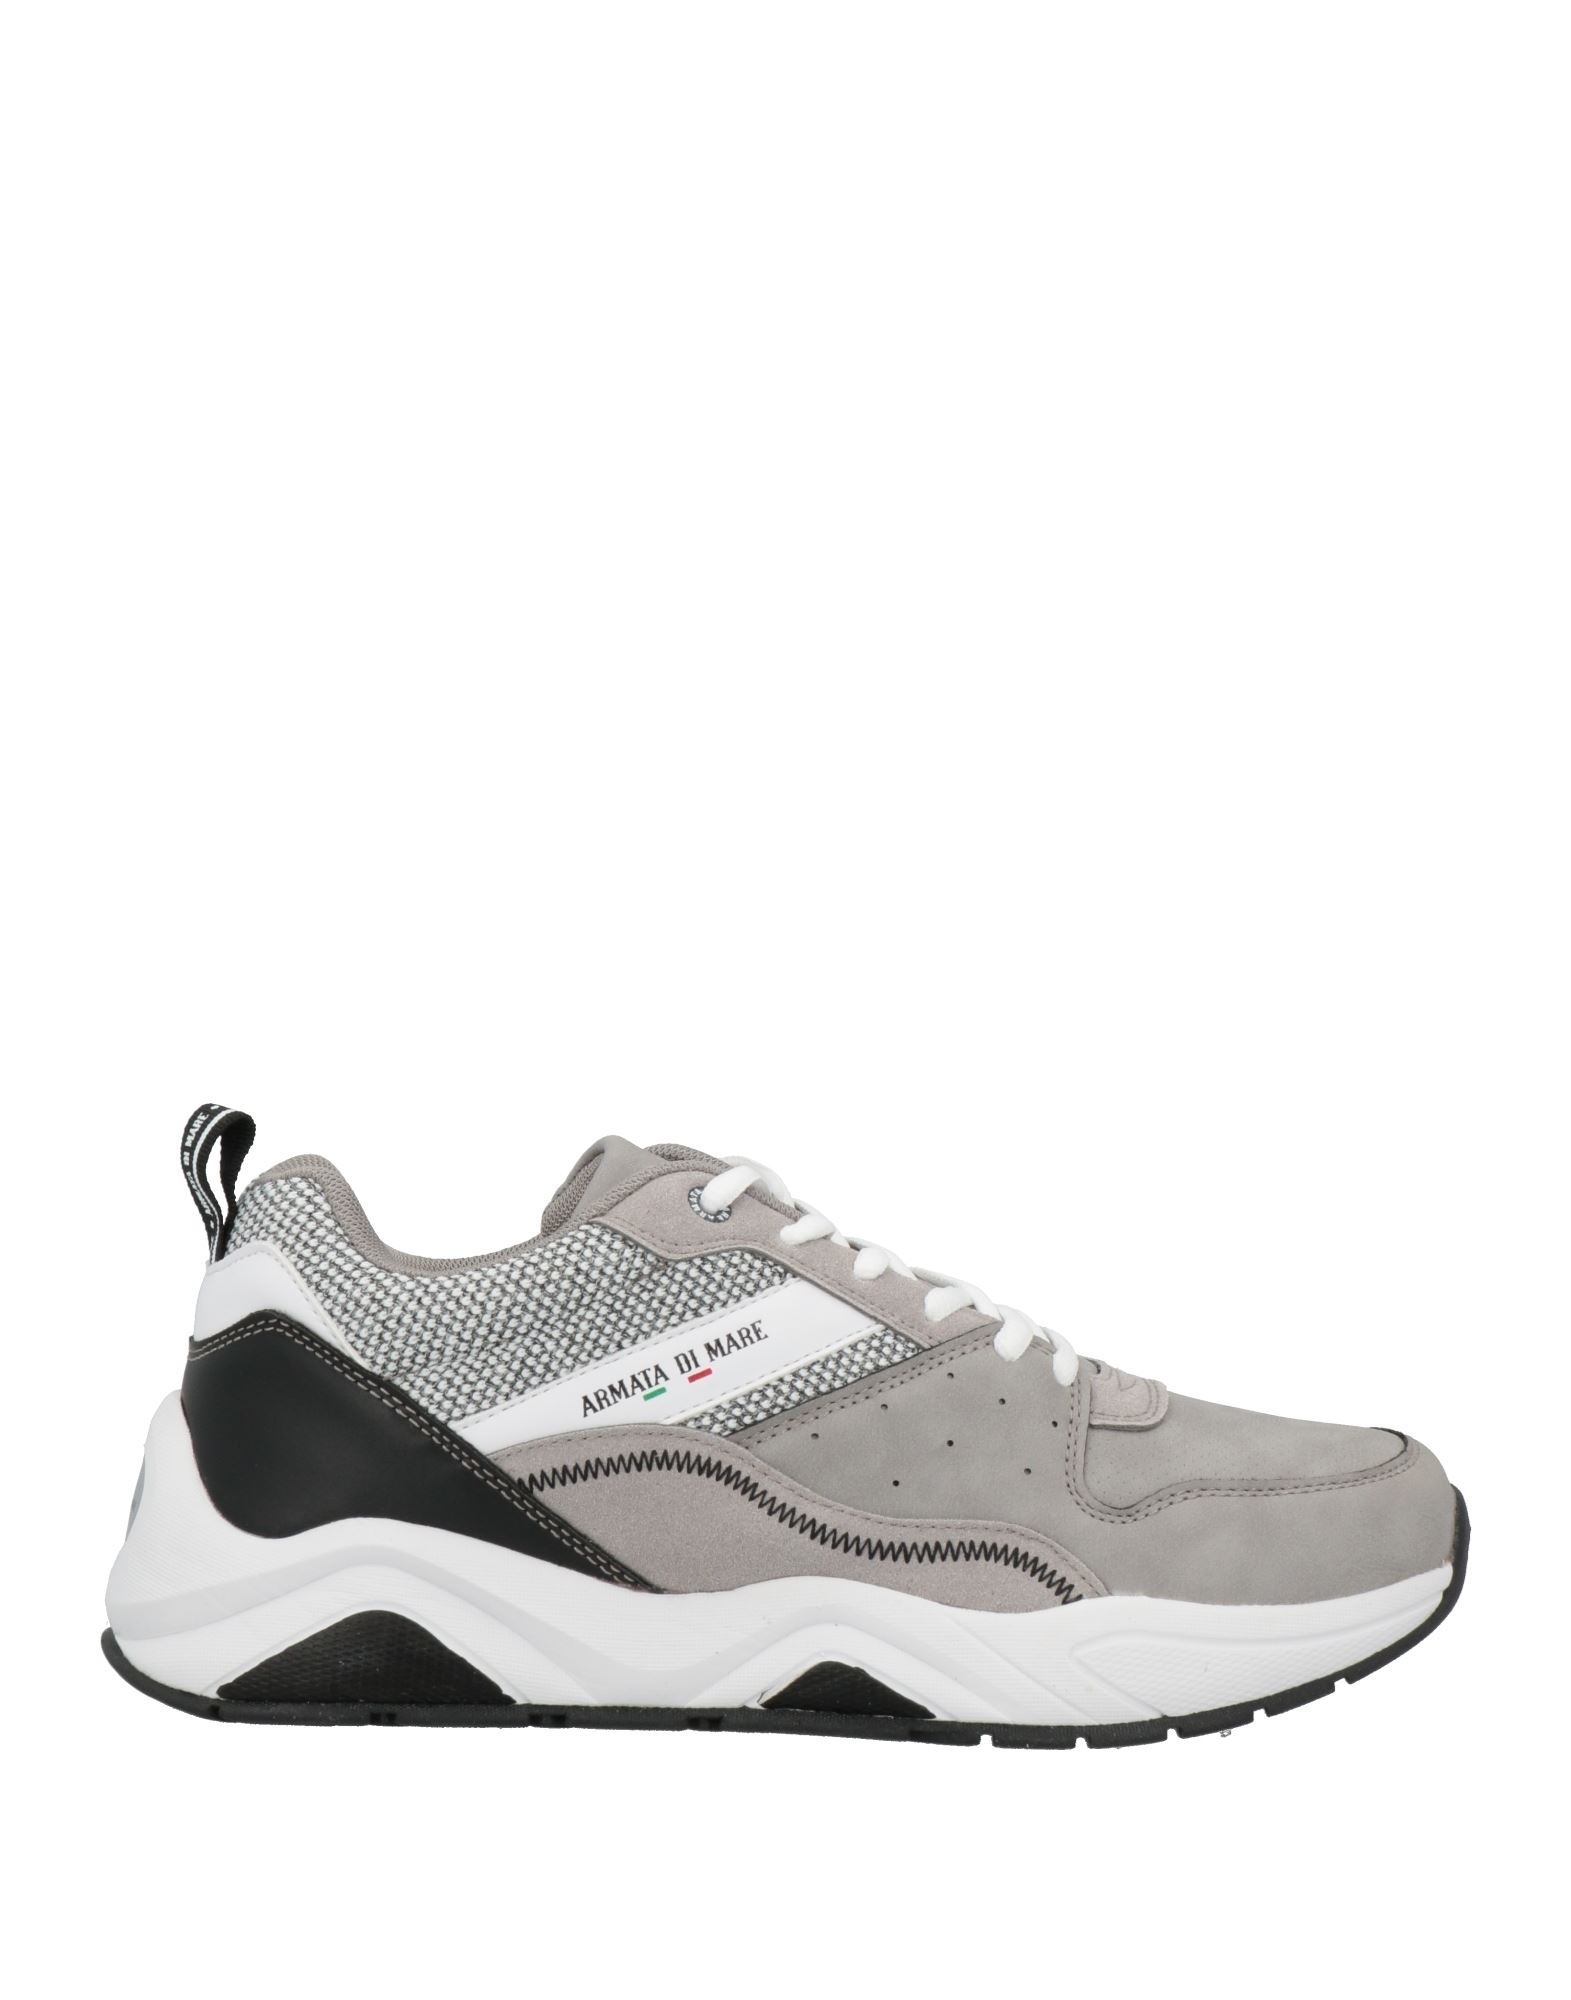 Armata Di Mare Sneakers In Grey